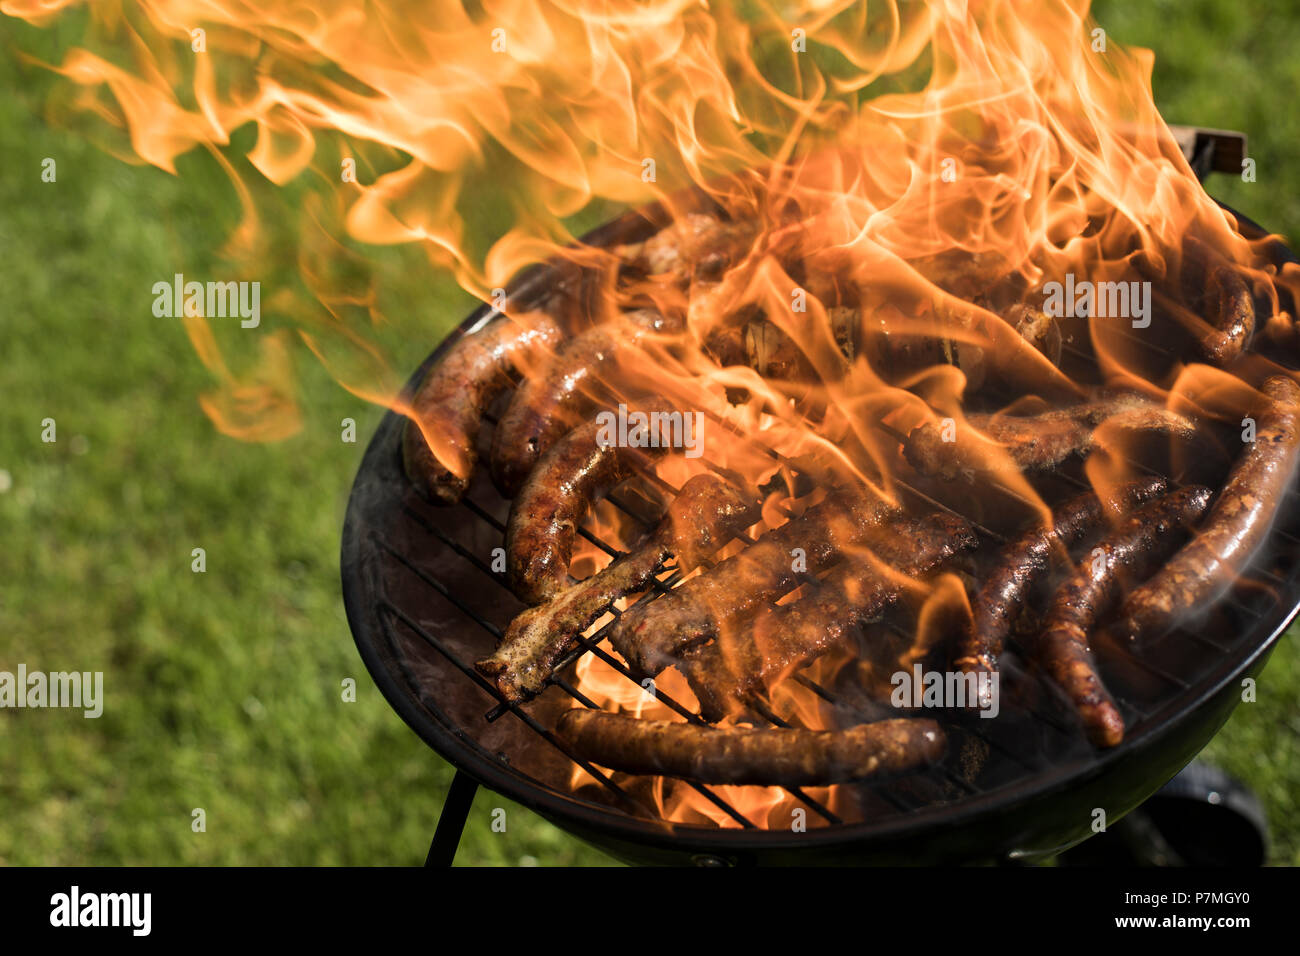 Un assortimento di carni alla griglia su un barbecue estivo, concetto BBQ Foto Stock